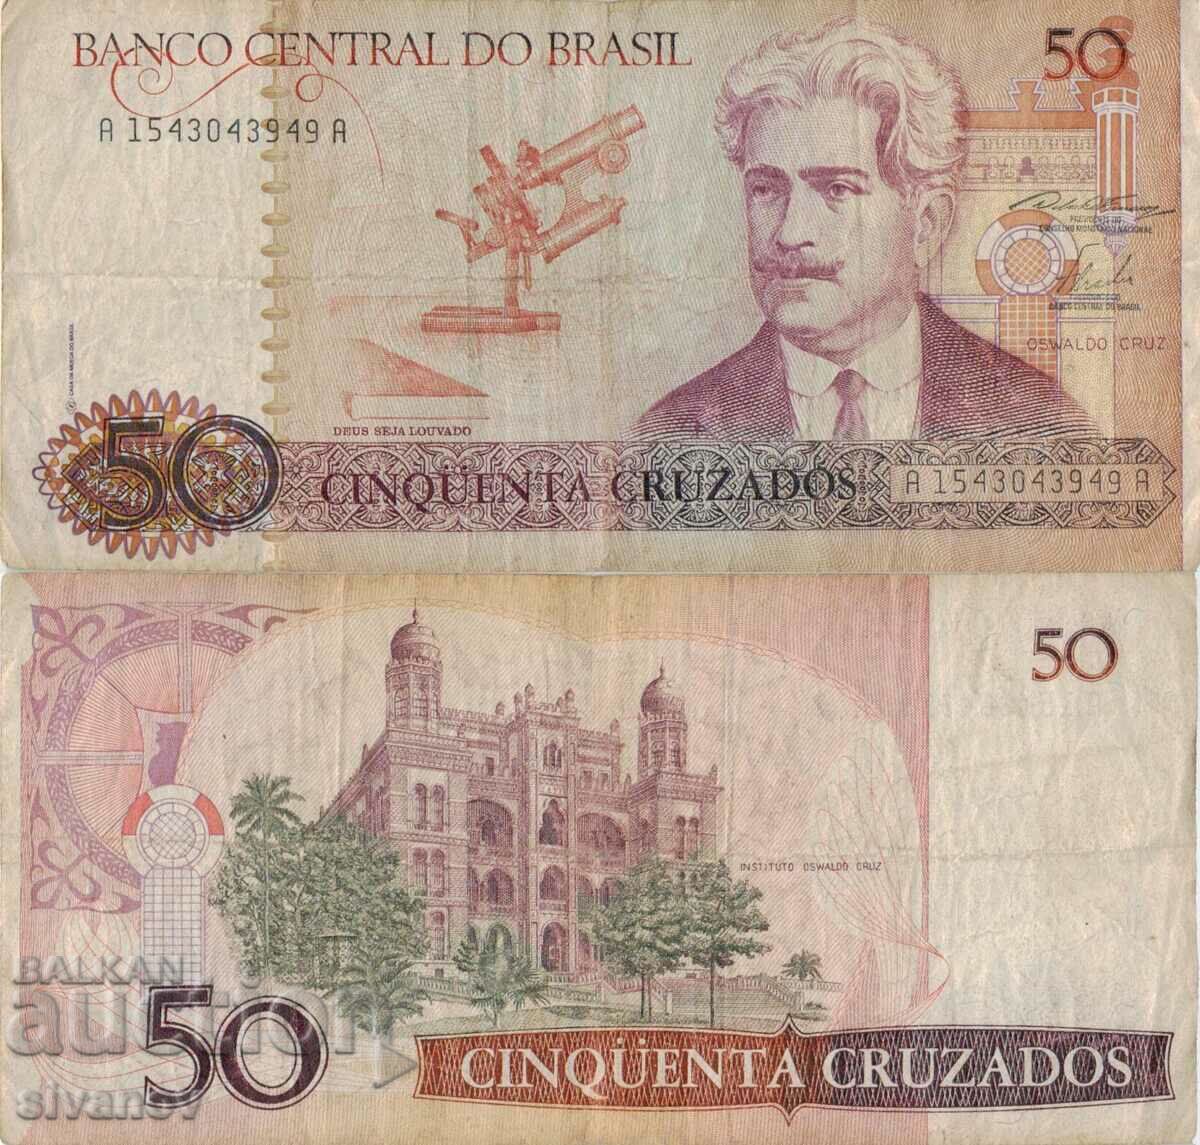 Brazil 50 Cruzado 1986 Banknote #5271